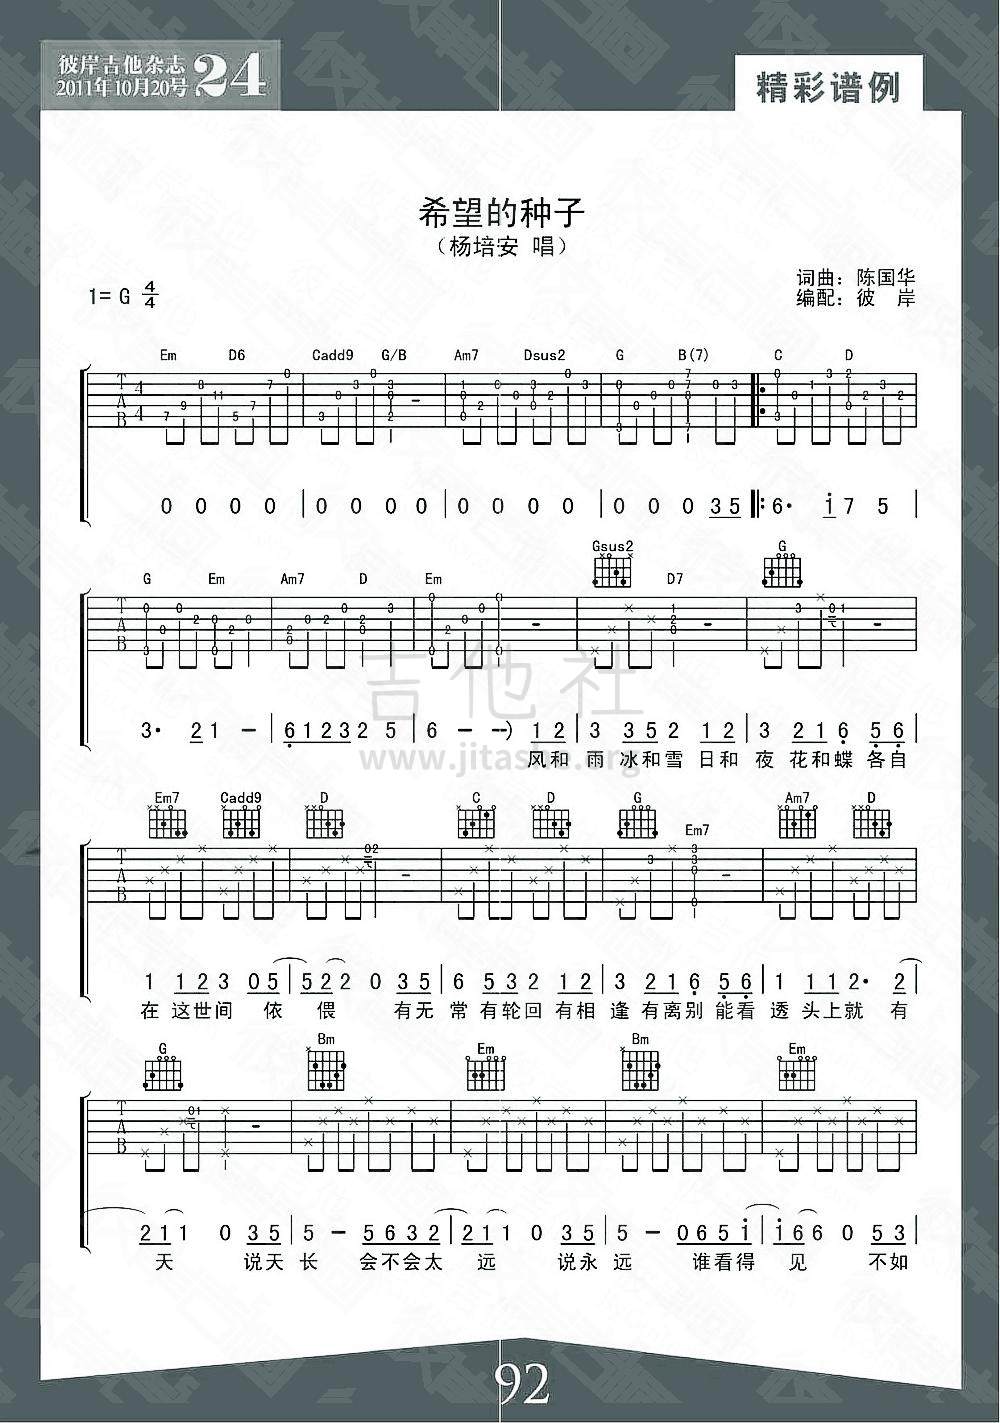 打印:希望的种子吉他谱_杨培安_1.jpg